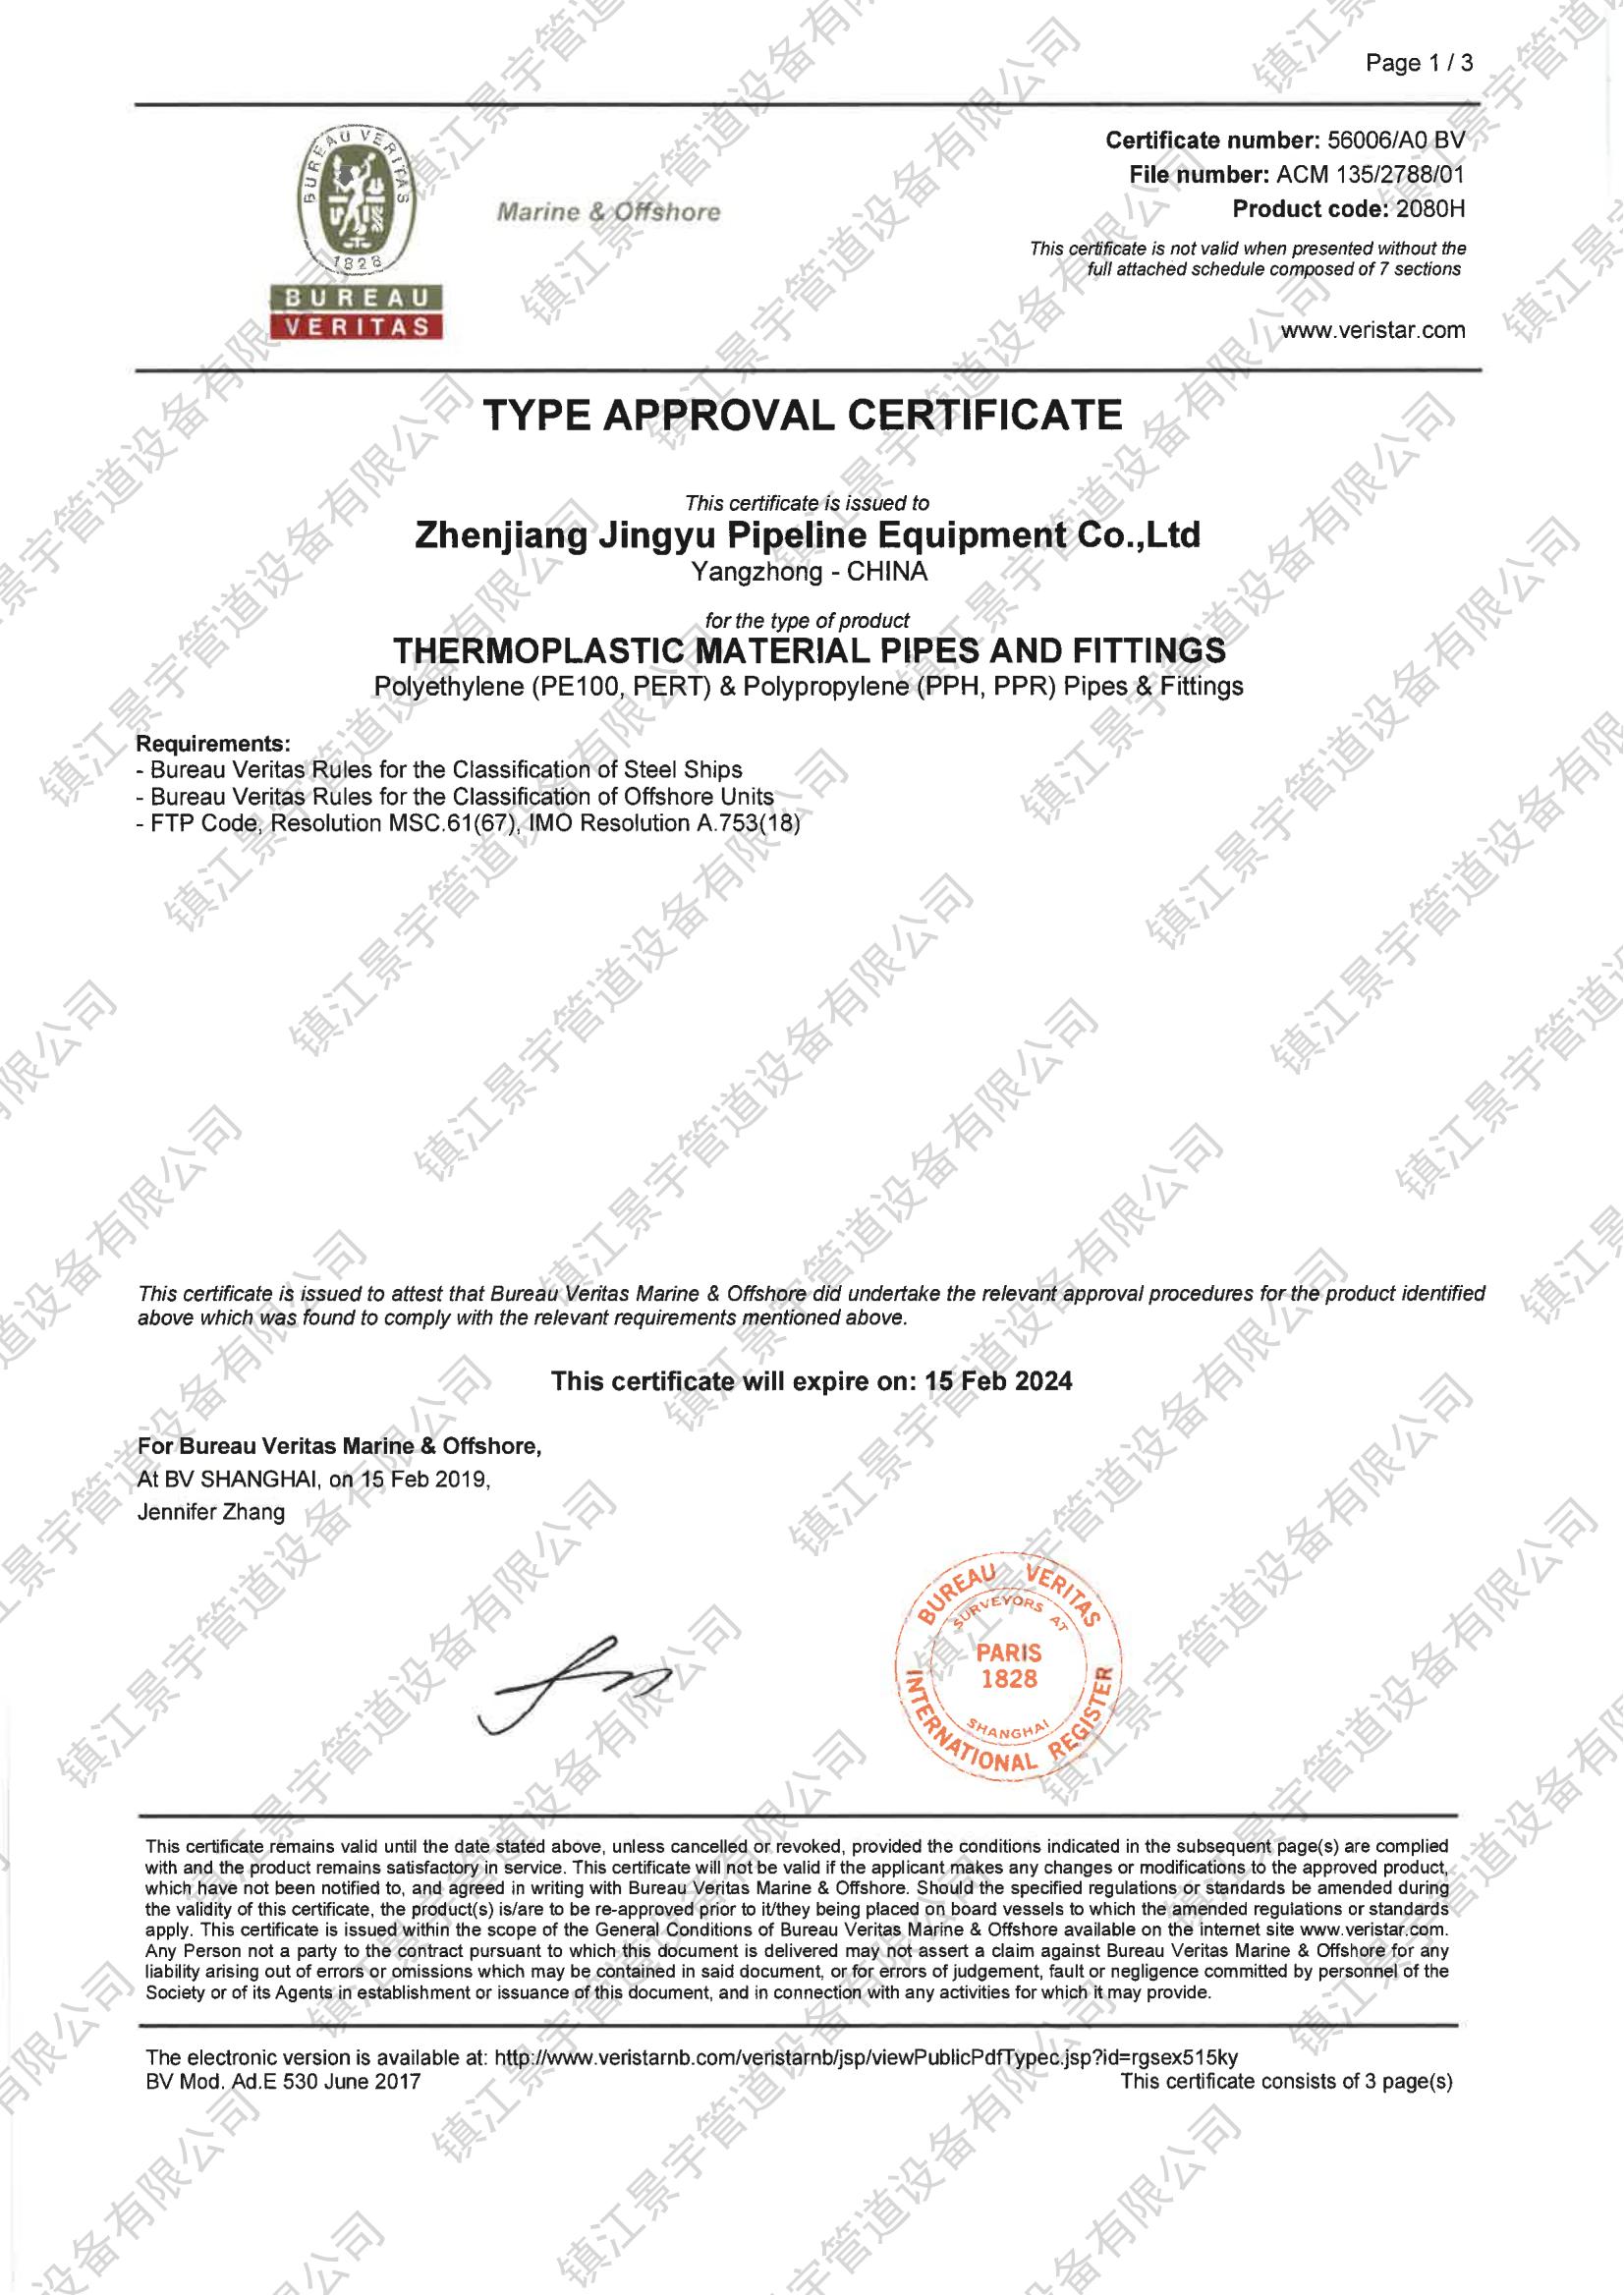 博业体育管道 BV型式认可证书 工厂认可证书_00.jpg